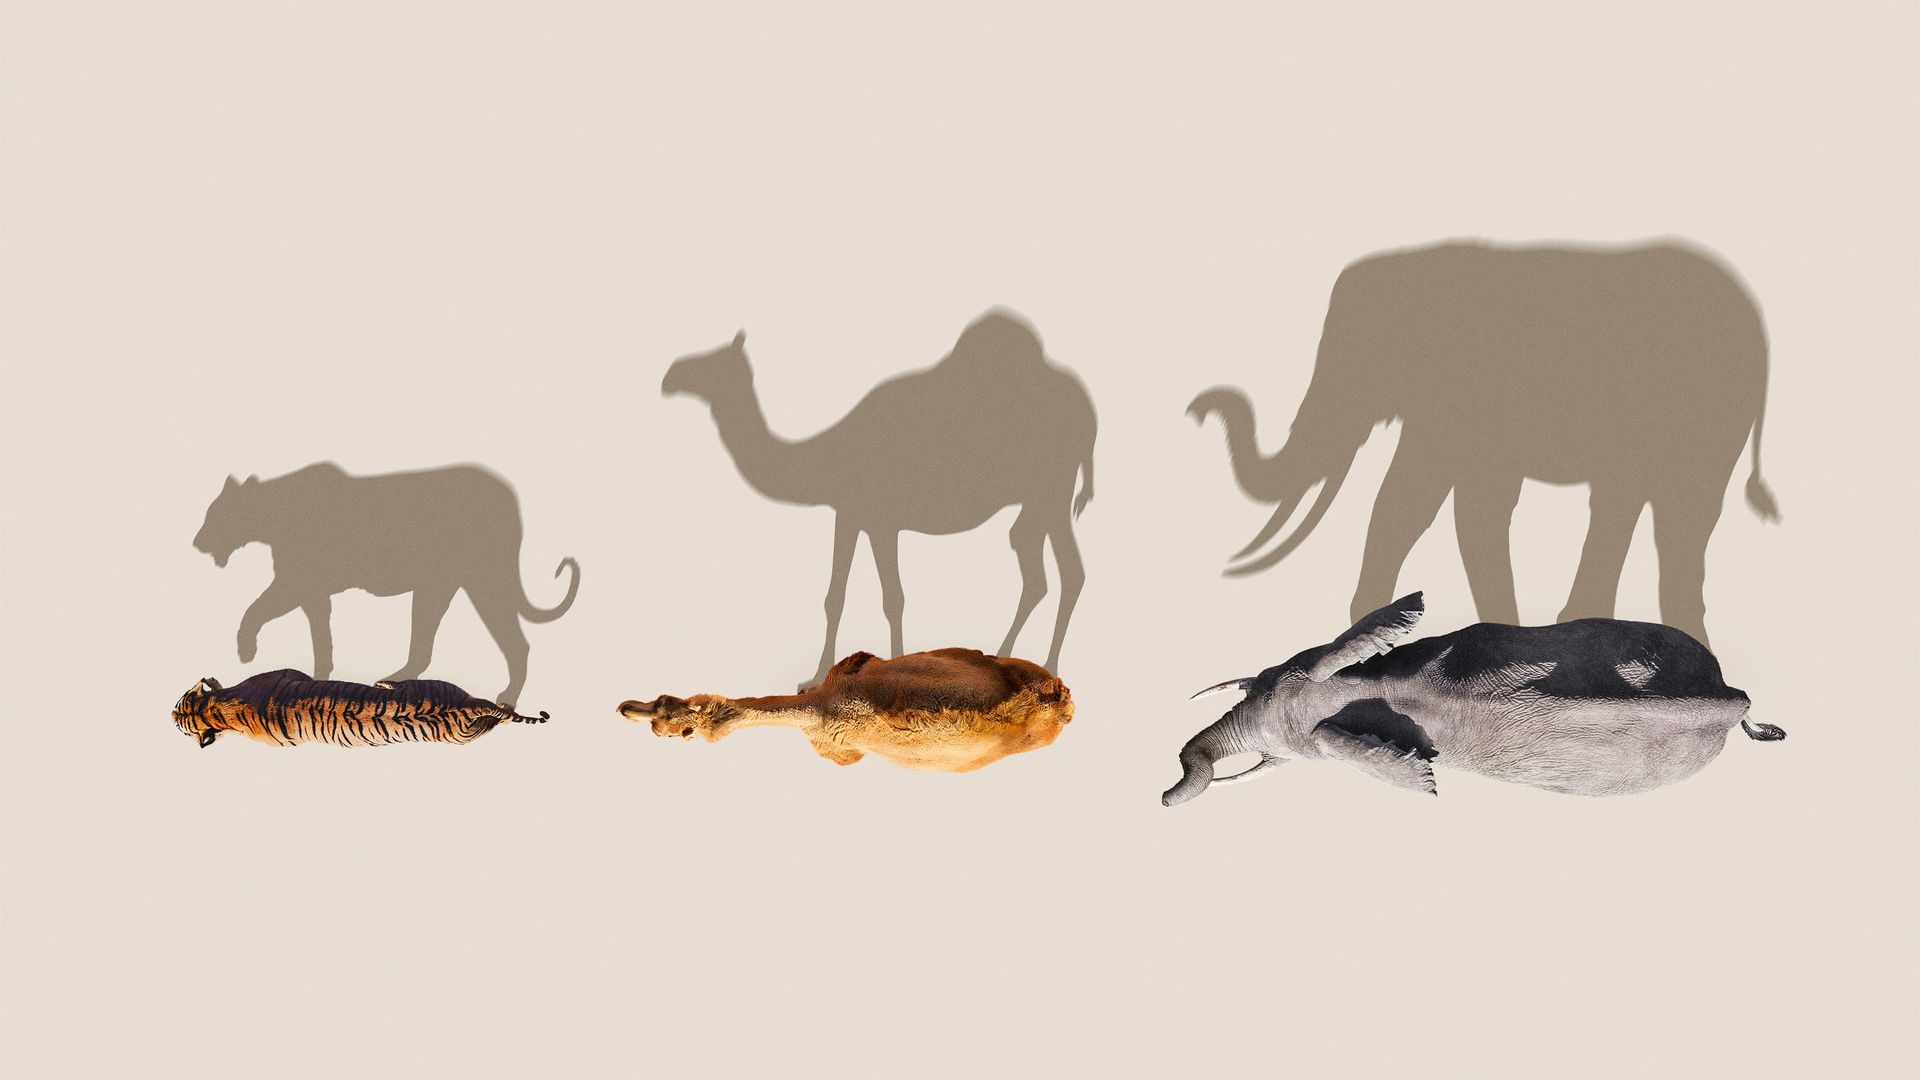 Mammals background